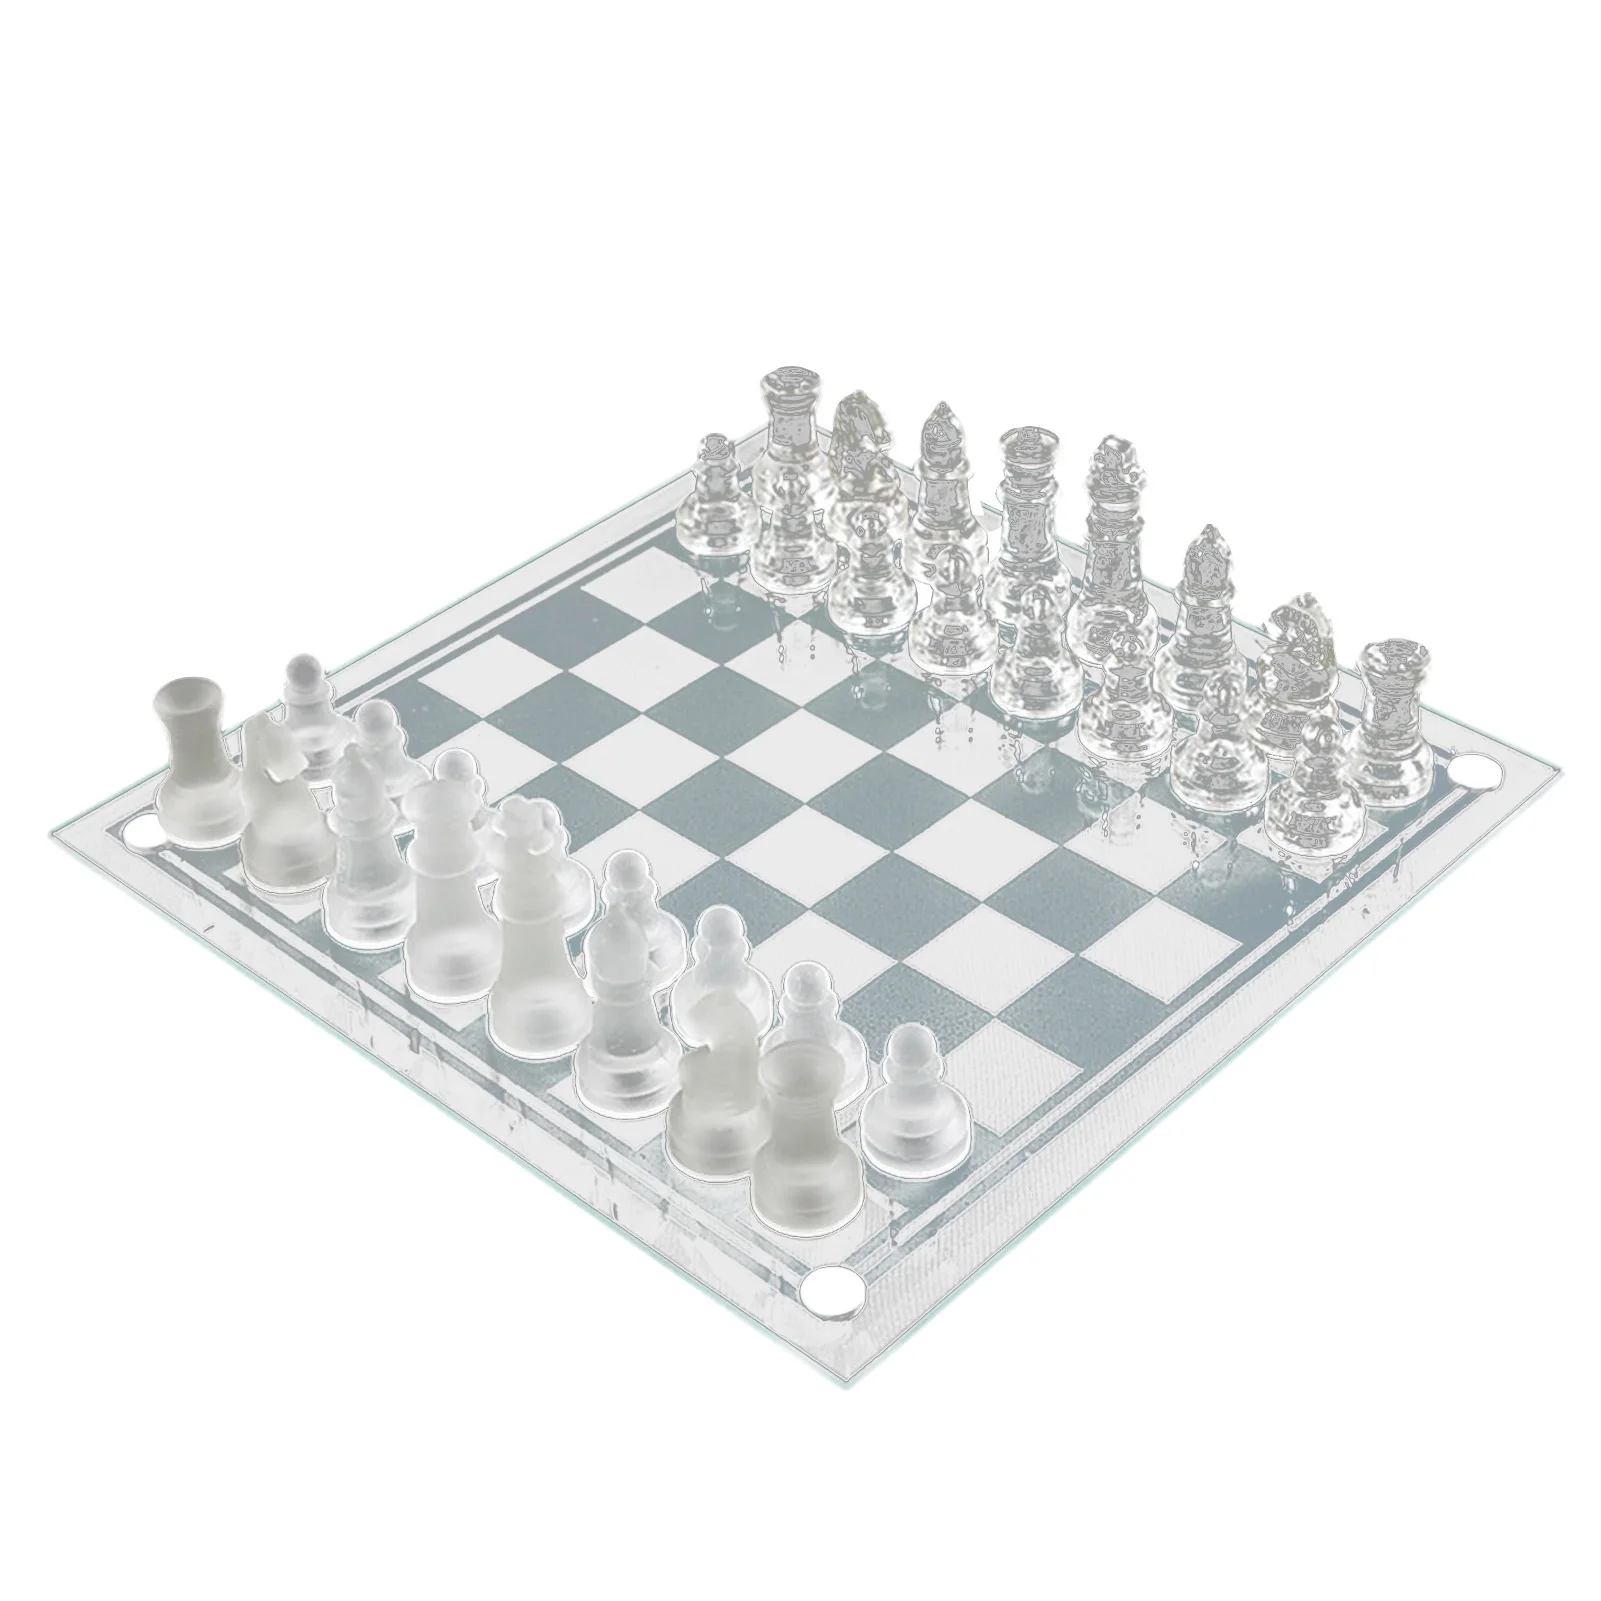 

Новый набор шахматных фигур K9 Glass, маленький и средний прозрачный кристалл, Международная игра в шахматы, игра для взаимодействия родителей ...